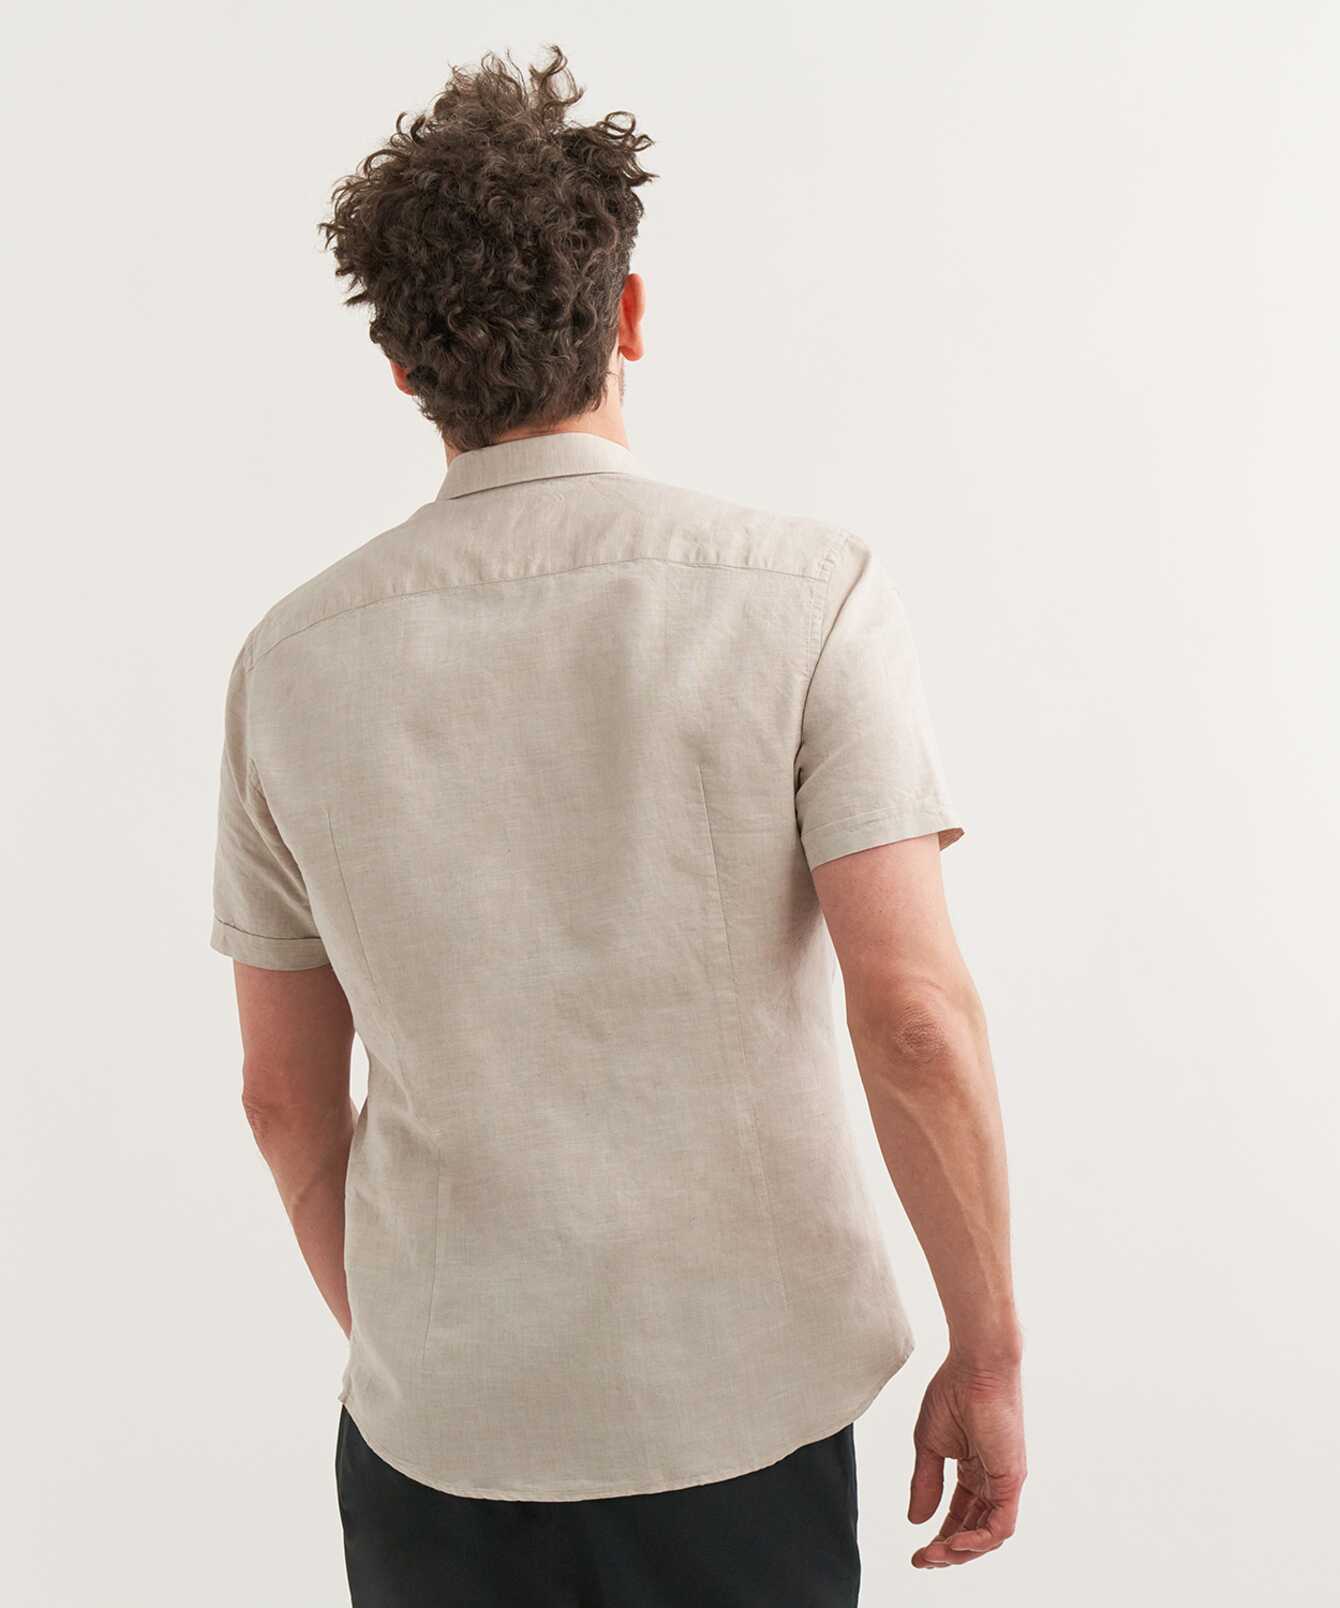 Shirt Portofino Beige Short Sleeve Linen Shirt  The Shirt Factory